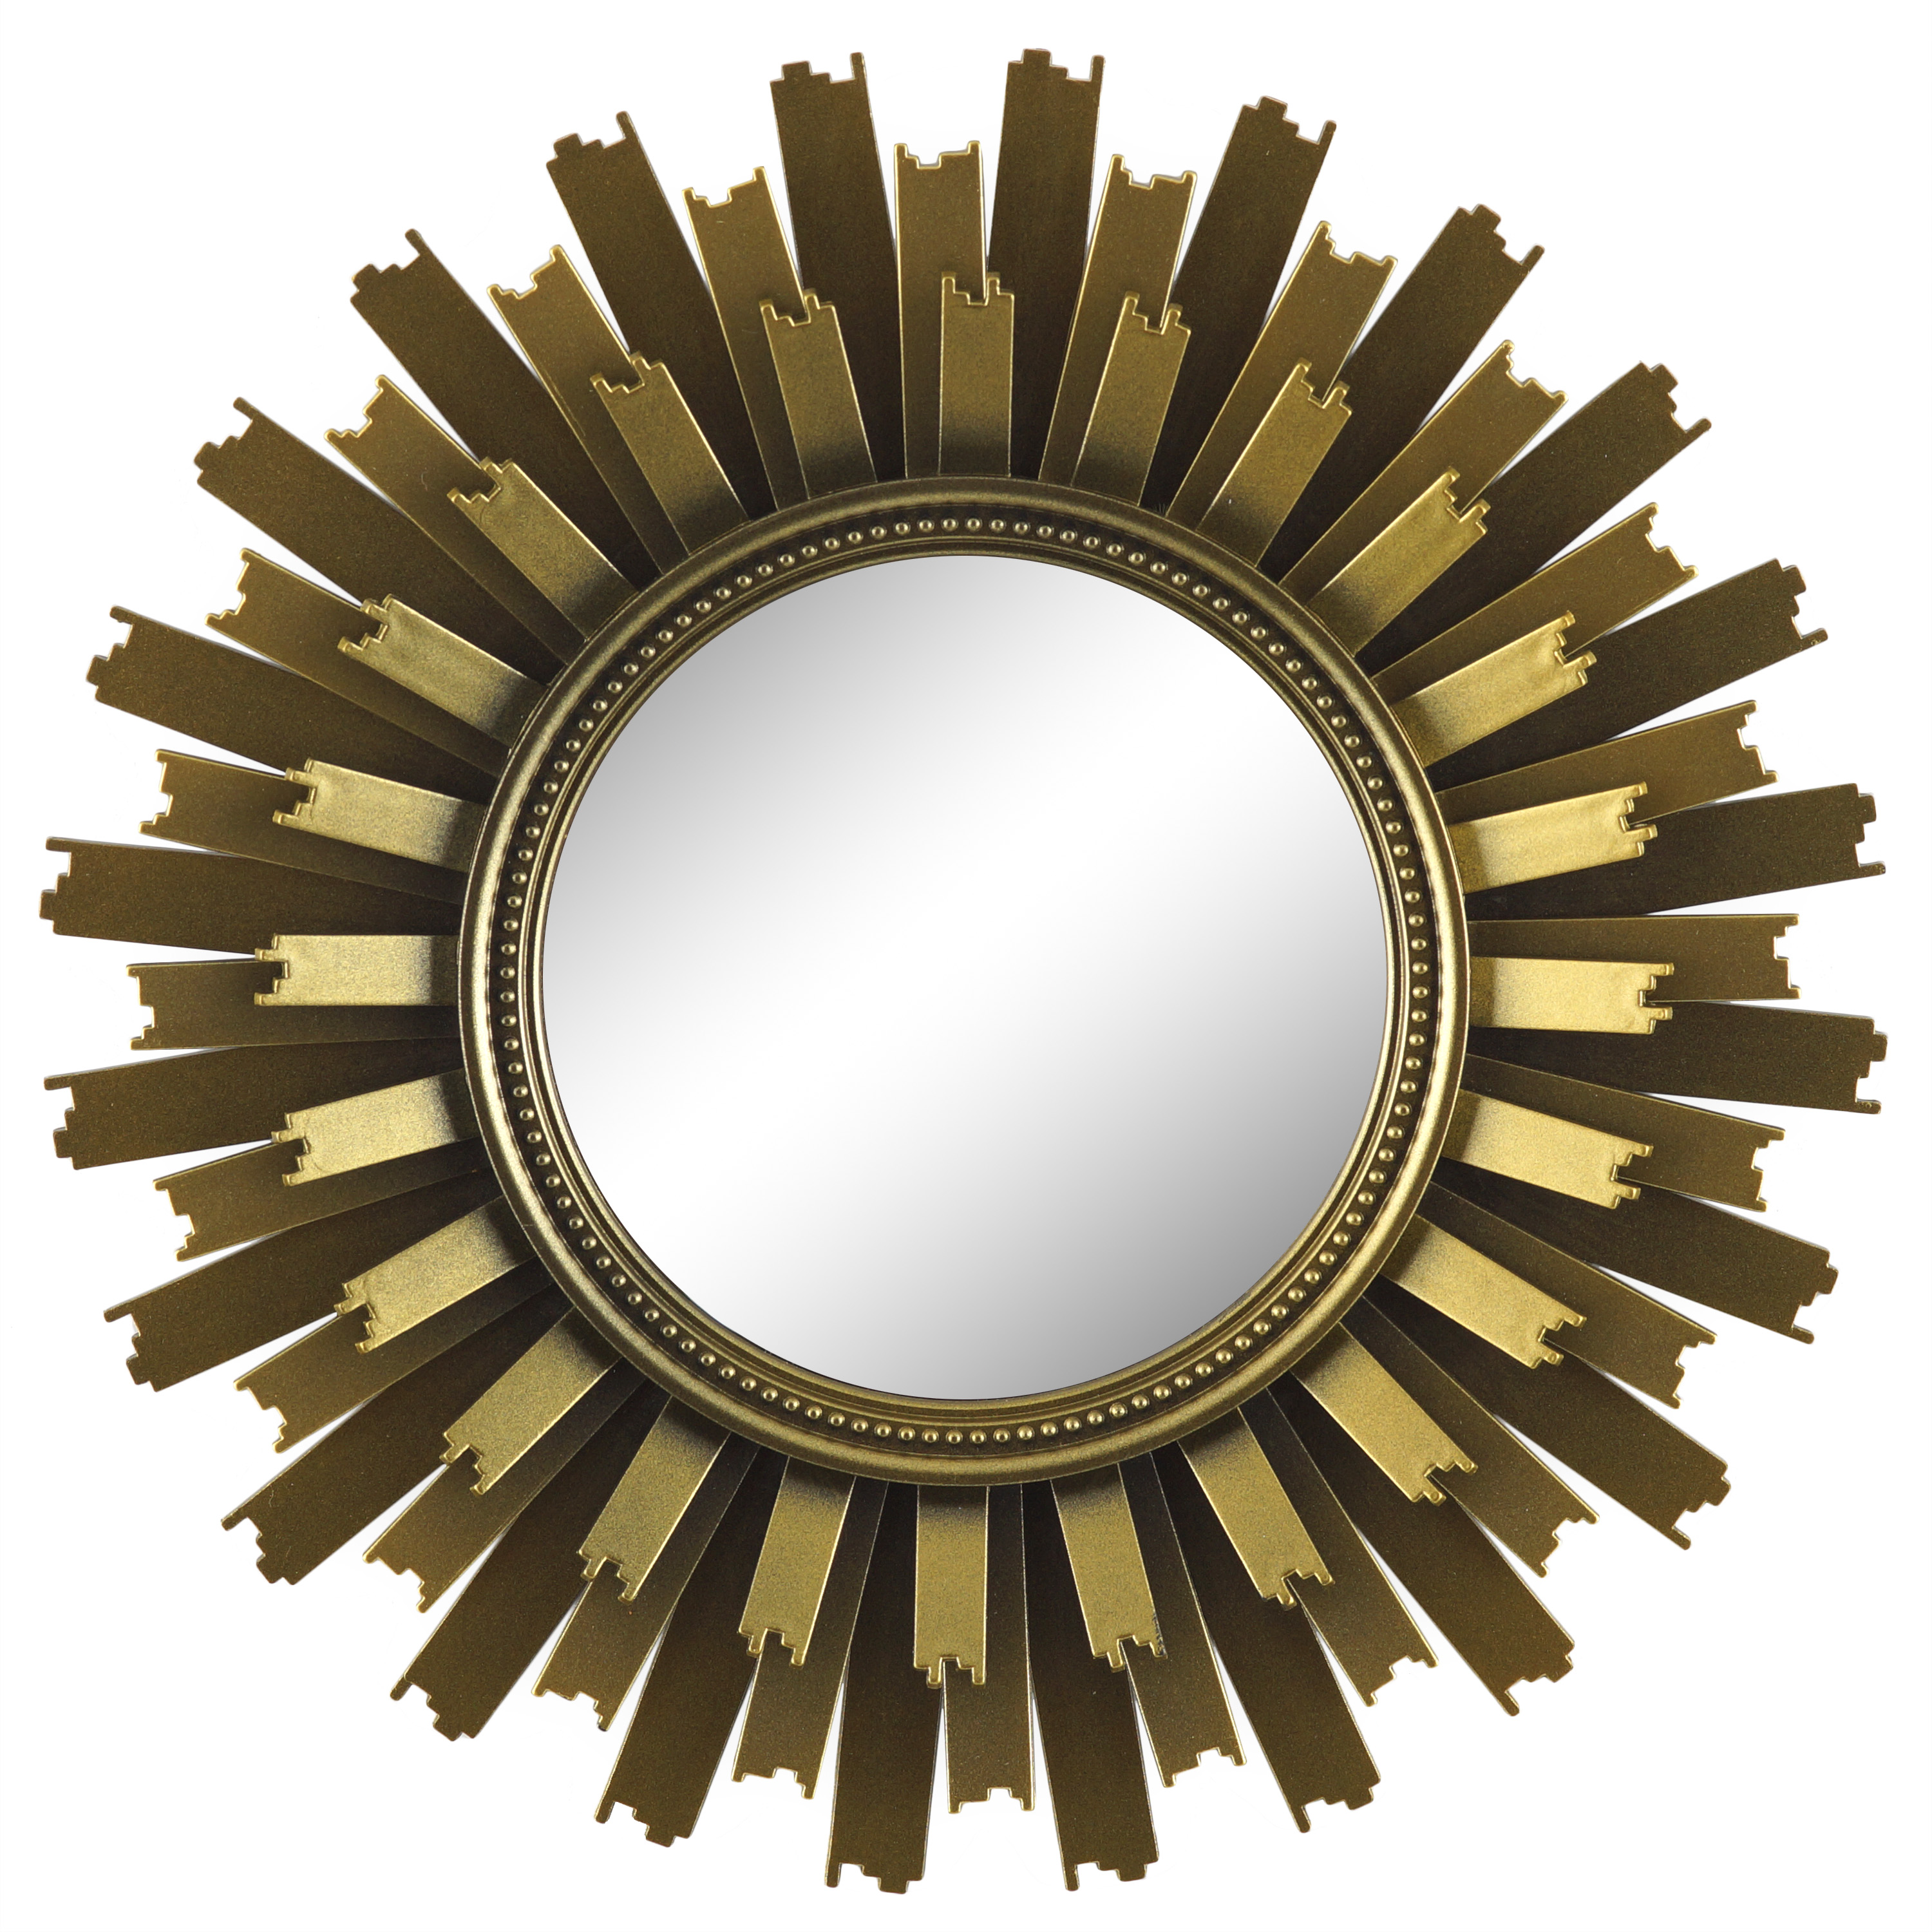 Better Homes & Gardens 3-Piece Round Sunburst Mirror Set in Gold Finish - image 2 of 5